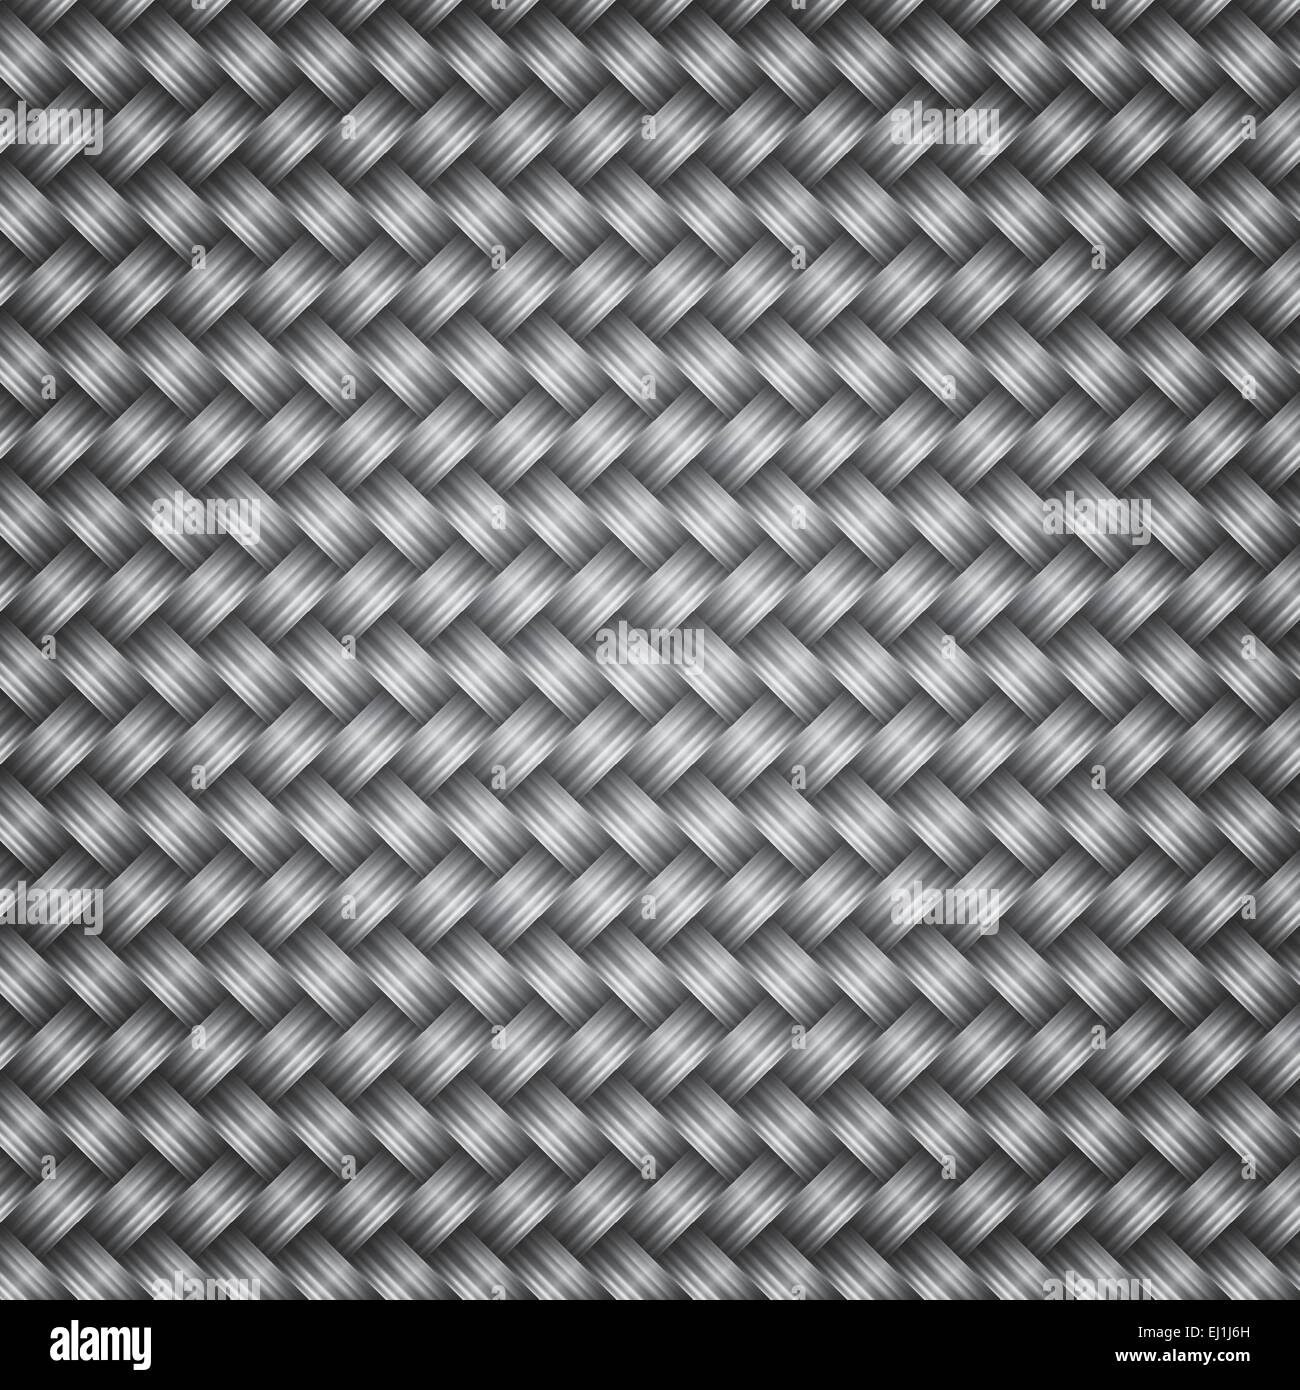 Metal fiber wicker texture background,vector illustration Stock Vector